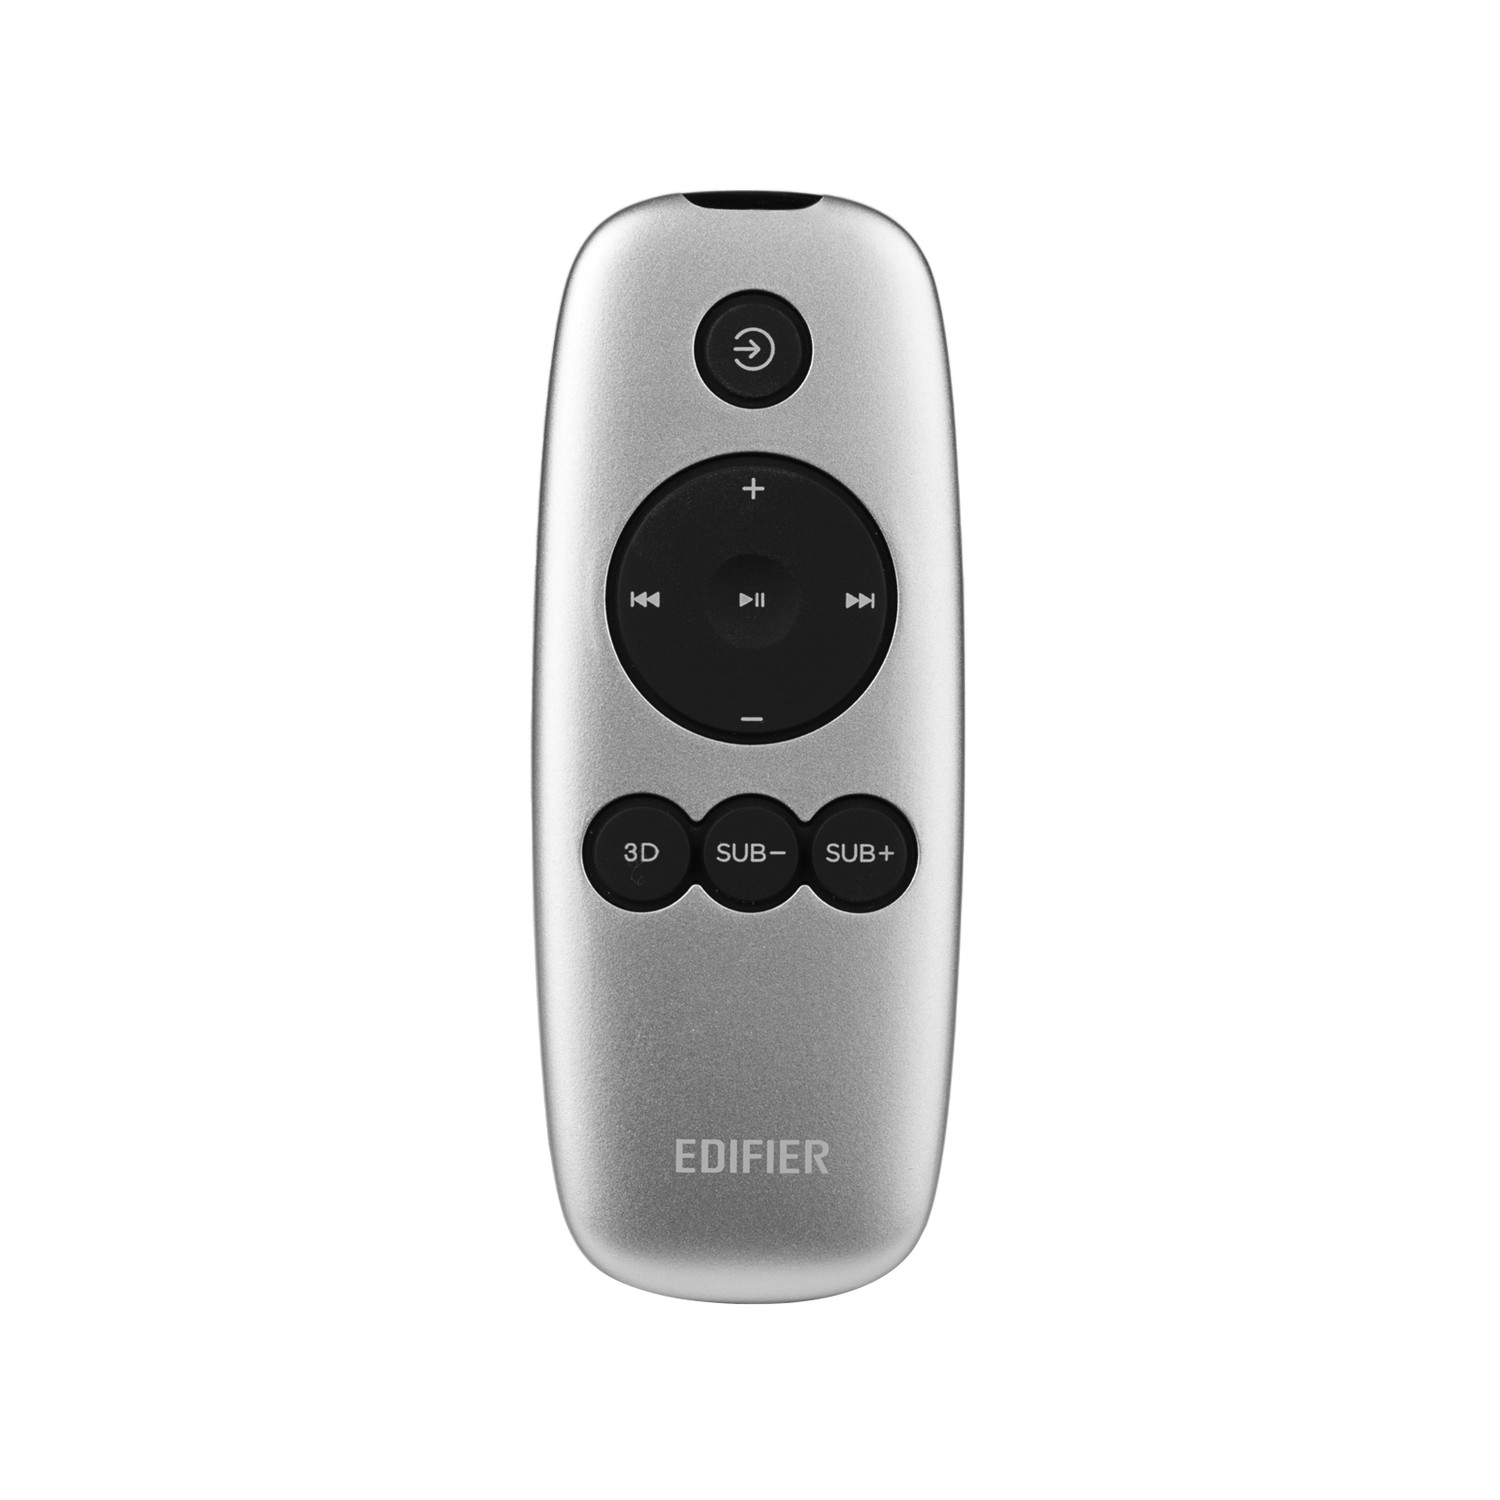 e235 Luna E Remote Control Fit for Edifier e235 Luna E speakers